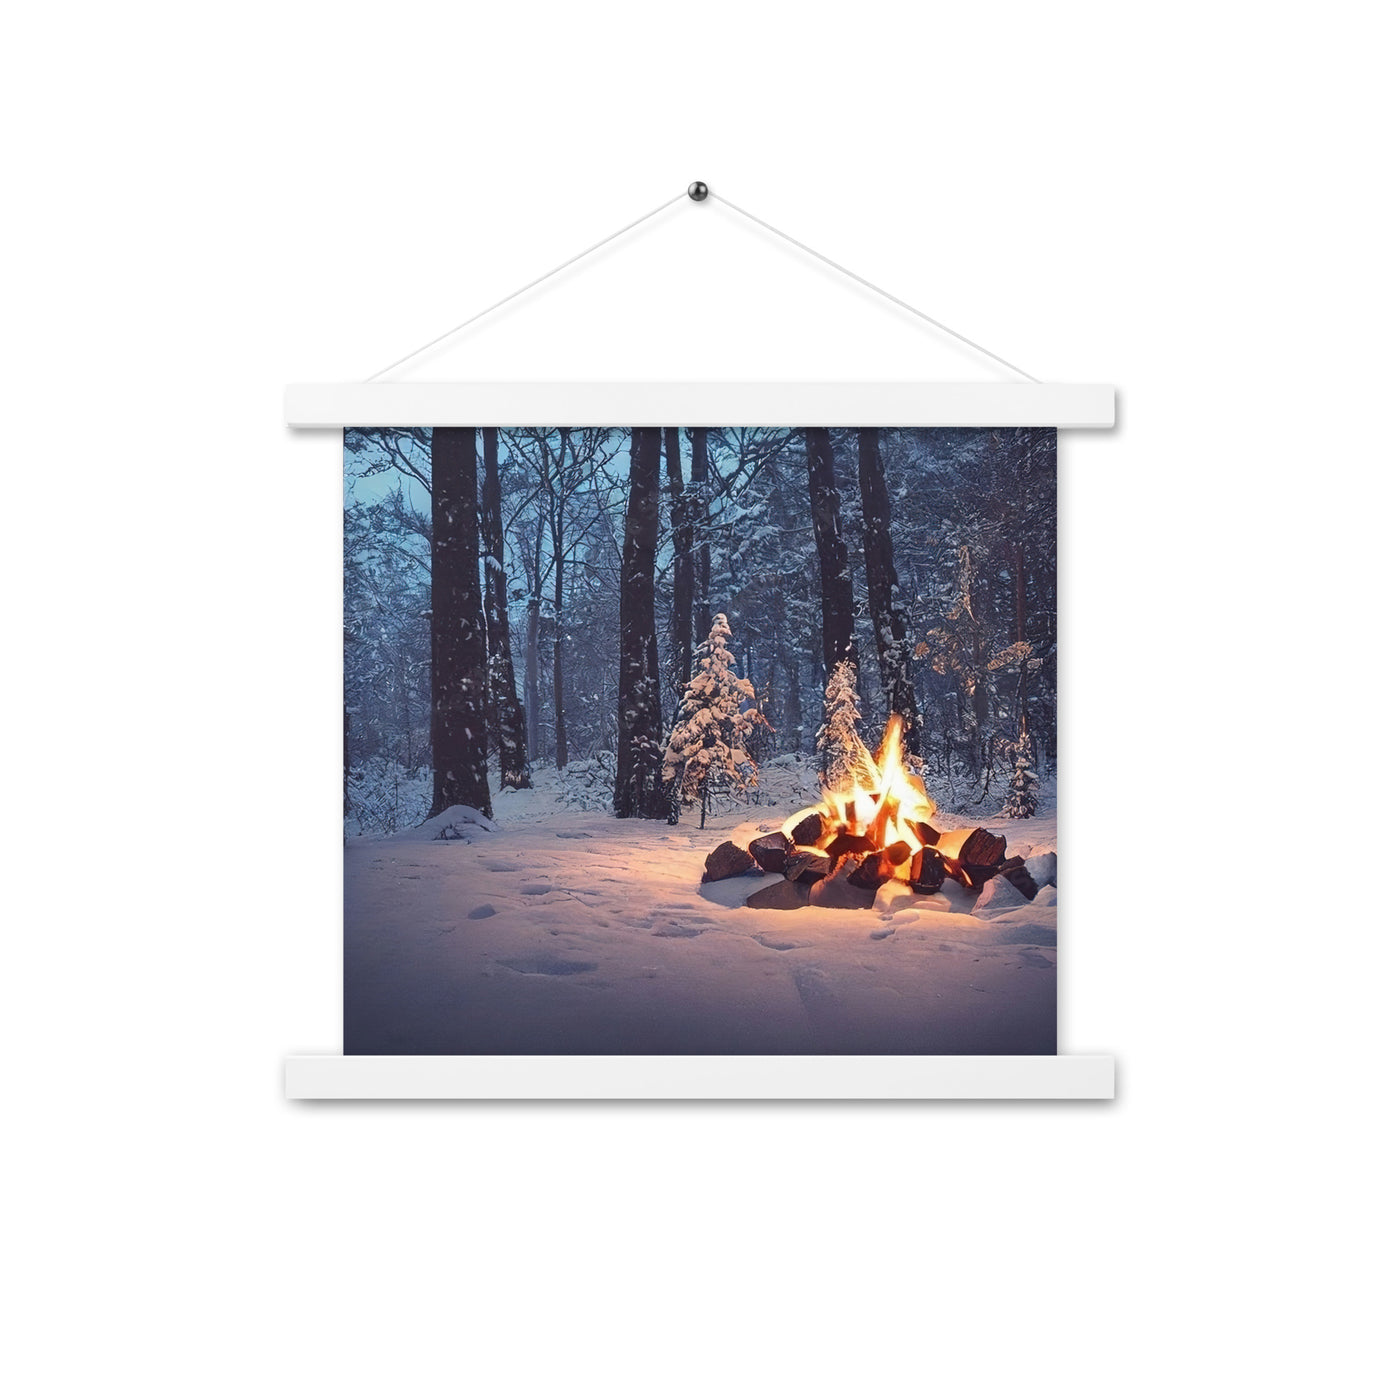 Lagerfeuer im Winter - Camping Foto - Premium Poster mit Aufhängung camping xxx 35.6 x 35.6 cm